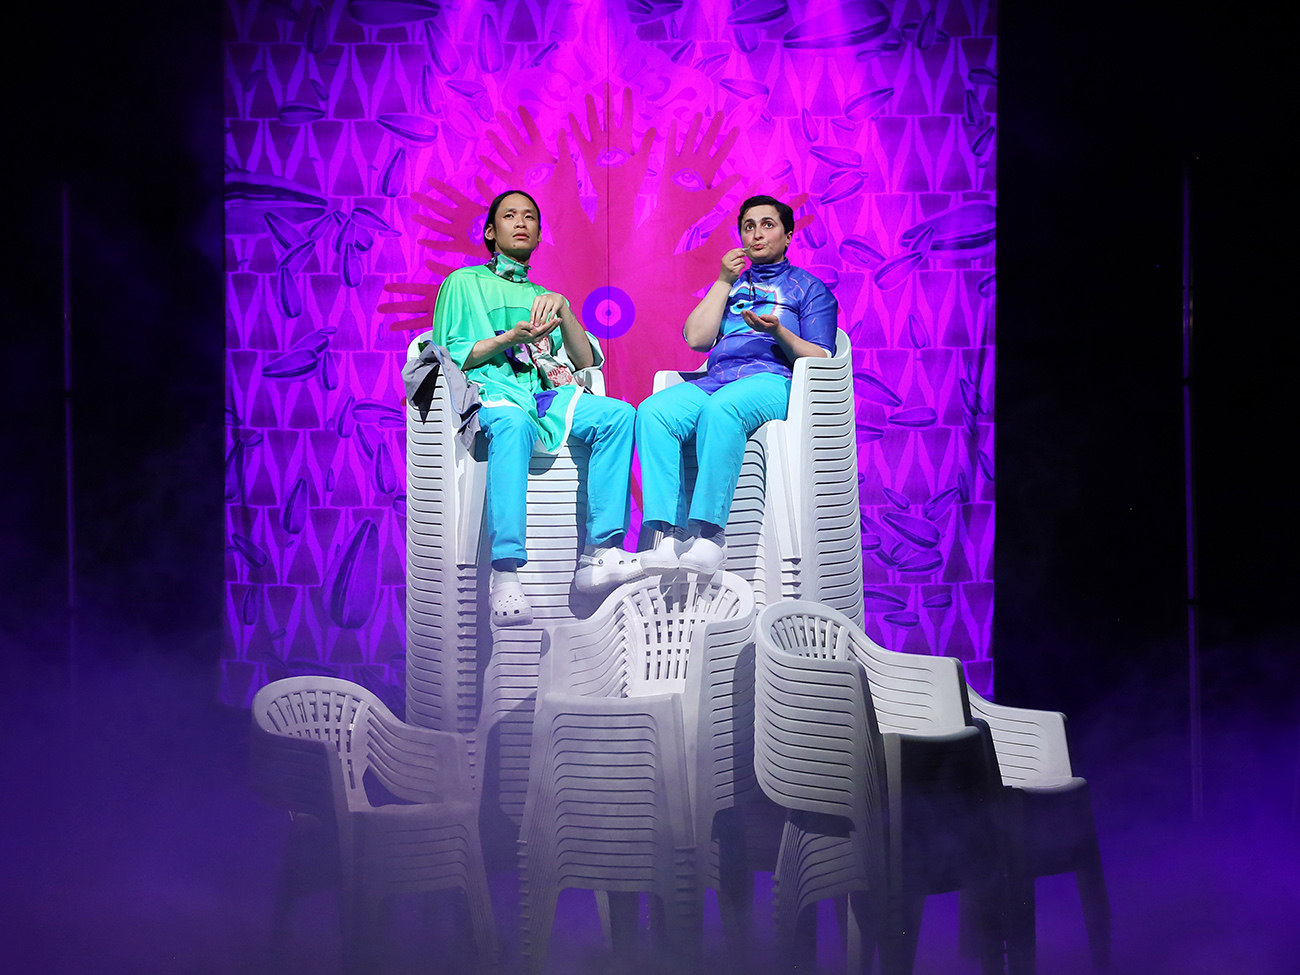 Auf der Bühne sitzen zwei Personen auf einem hohen Stapel an Plastikstühlen. Hinter ihnen ist ein grell-lilaner Vorhang zu sehen.